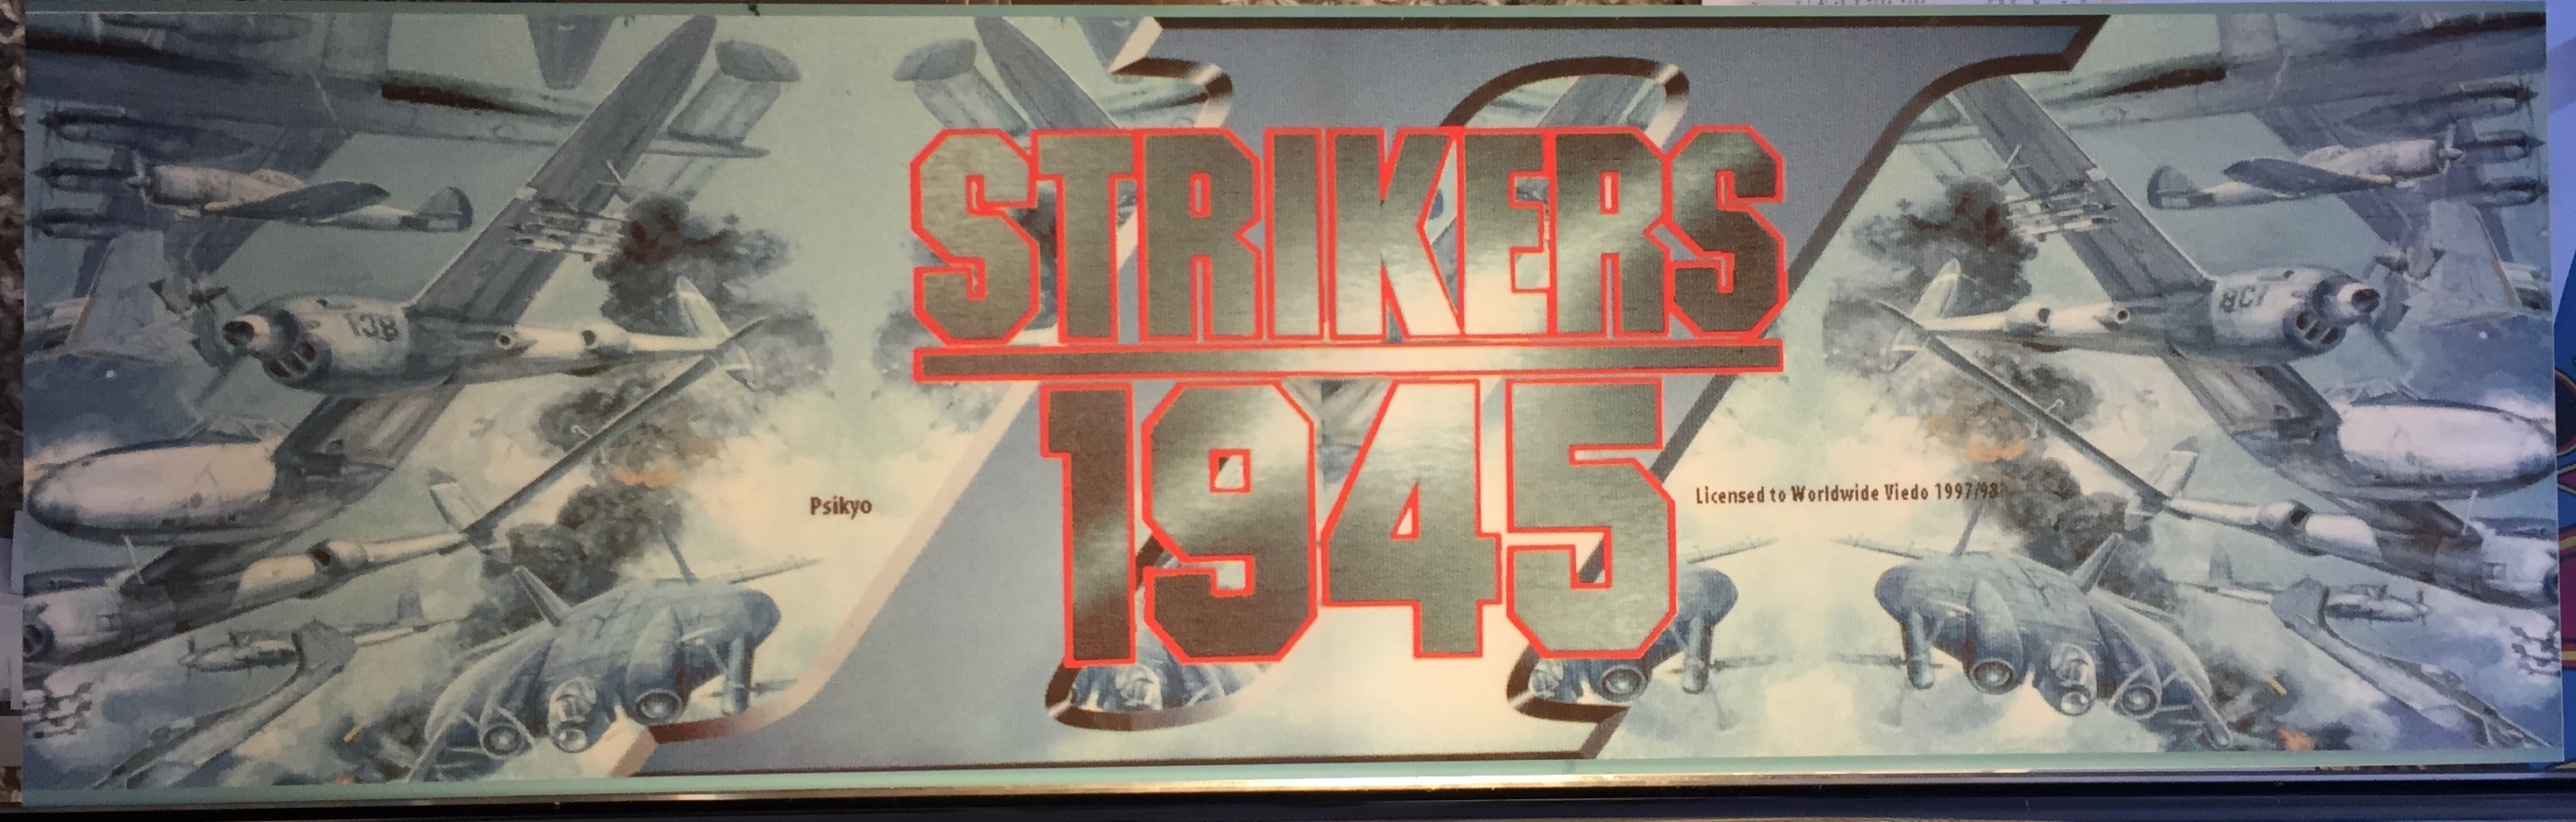 strikers 1945 arcade game